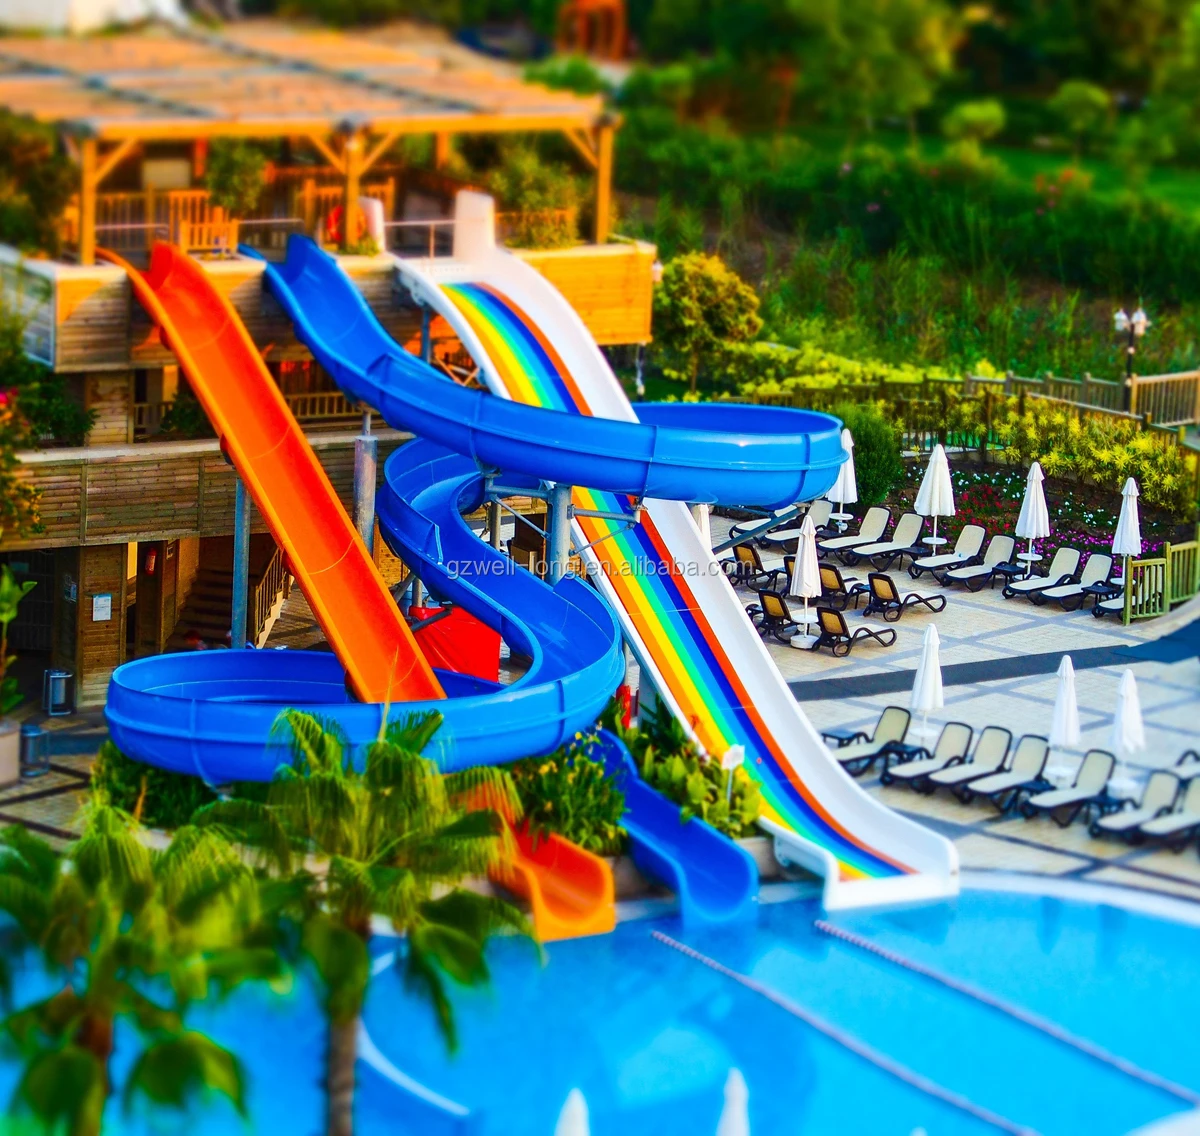 pool slides